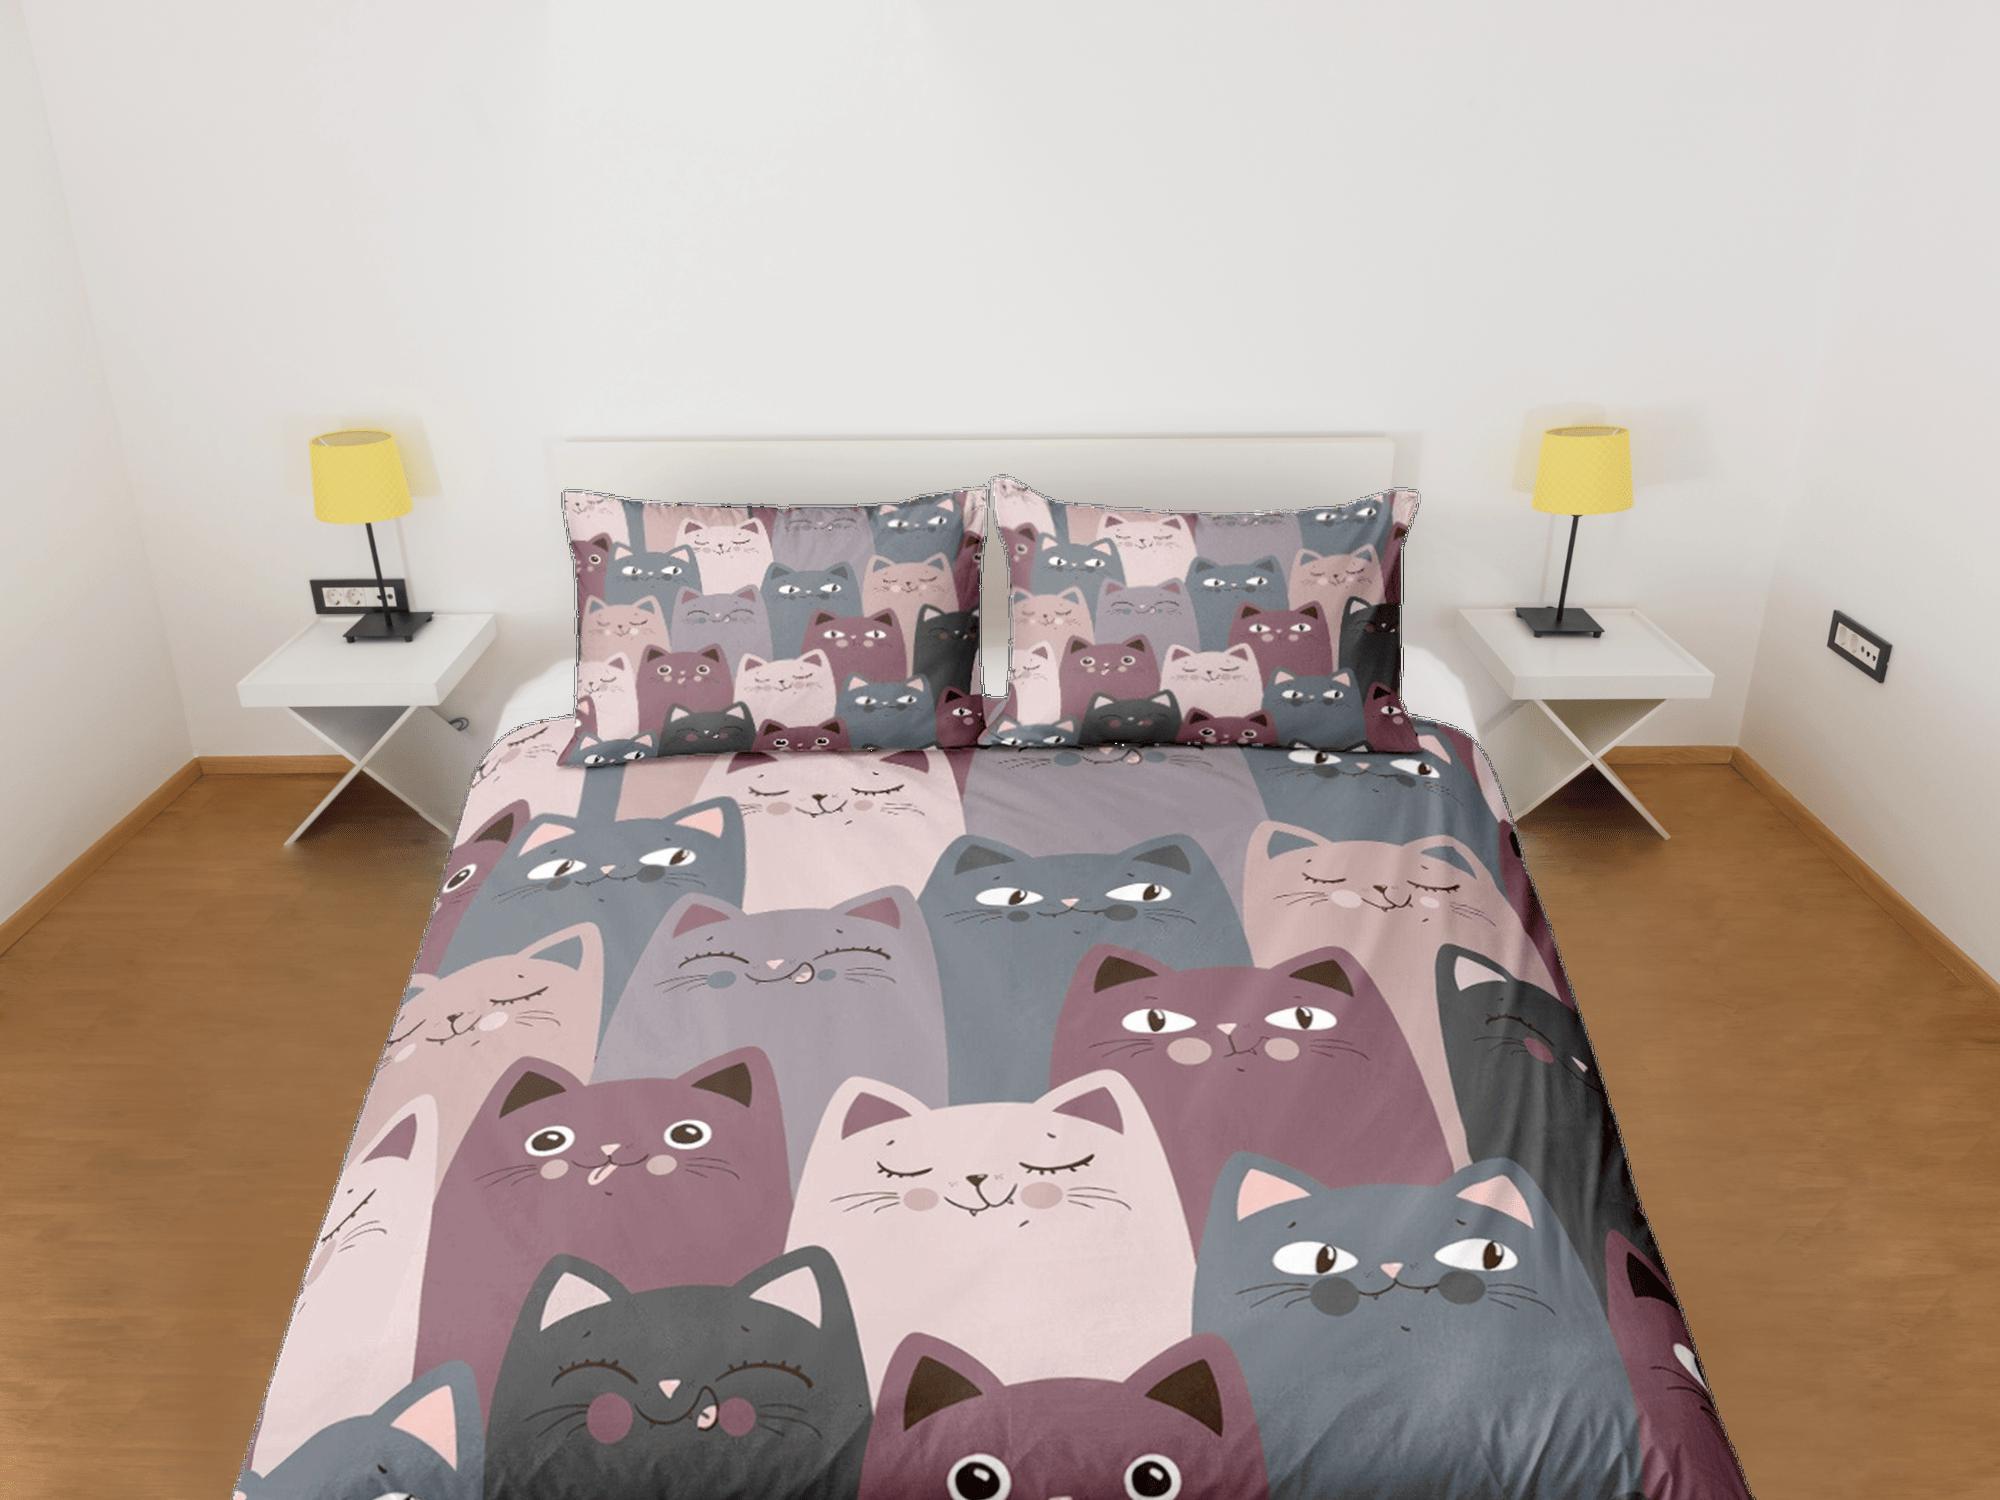 daintyduvet Cat Lover Duvet Cover Set Bedspread, Violet Grey Cute Bedding for Teens Kids Bedroom Comforter Cover